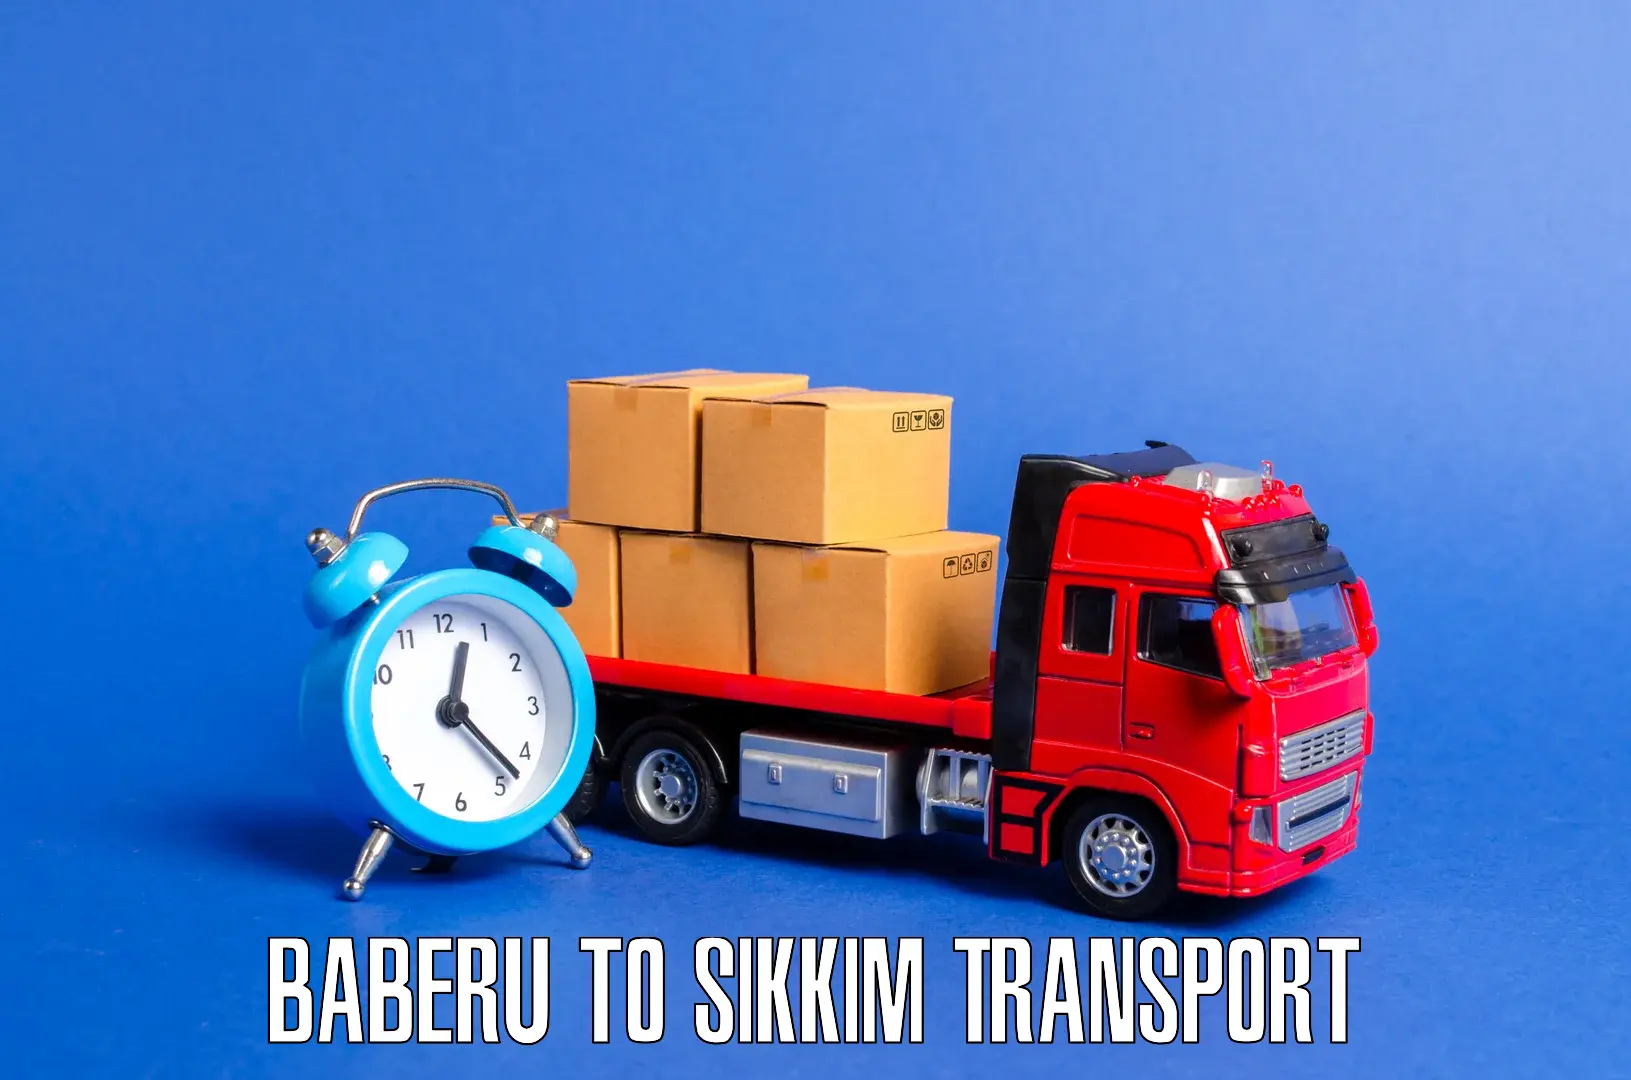 Interstate transport services Baberu to NIT Sikkim